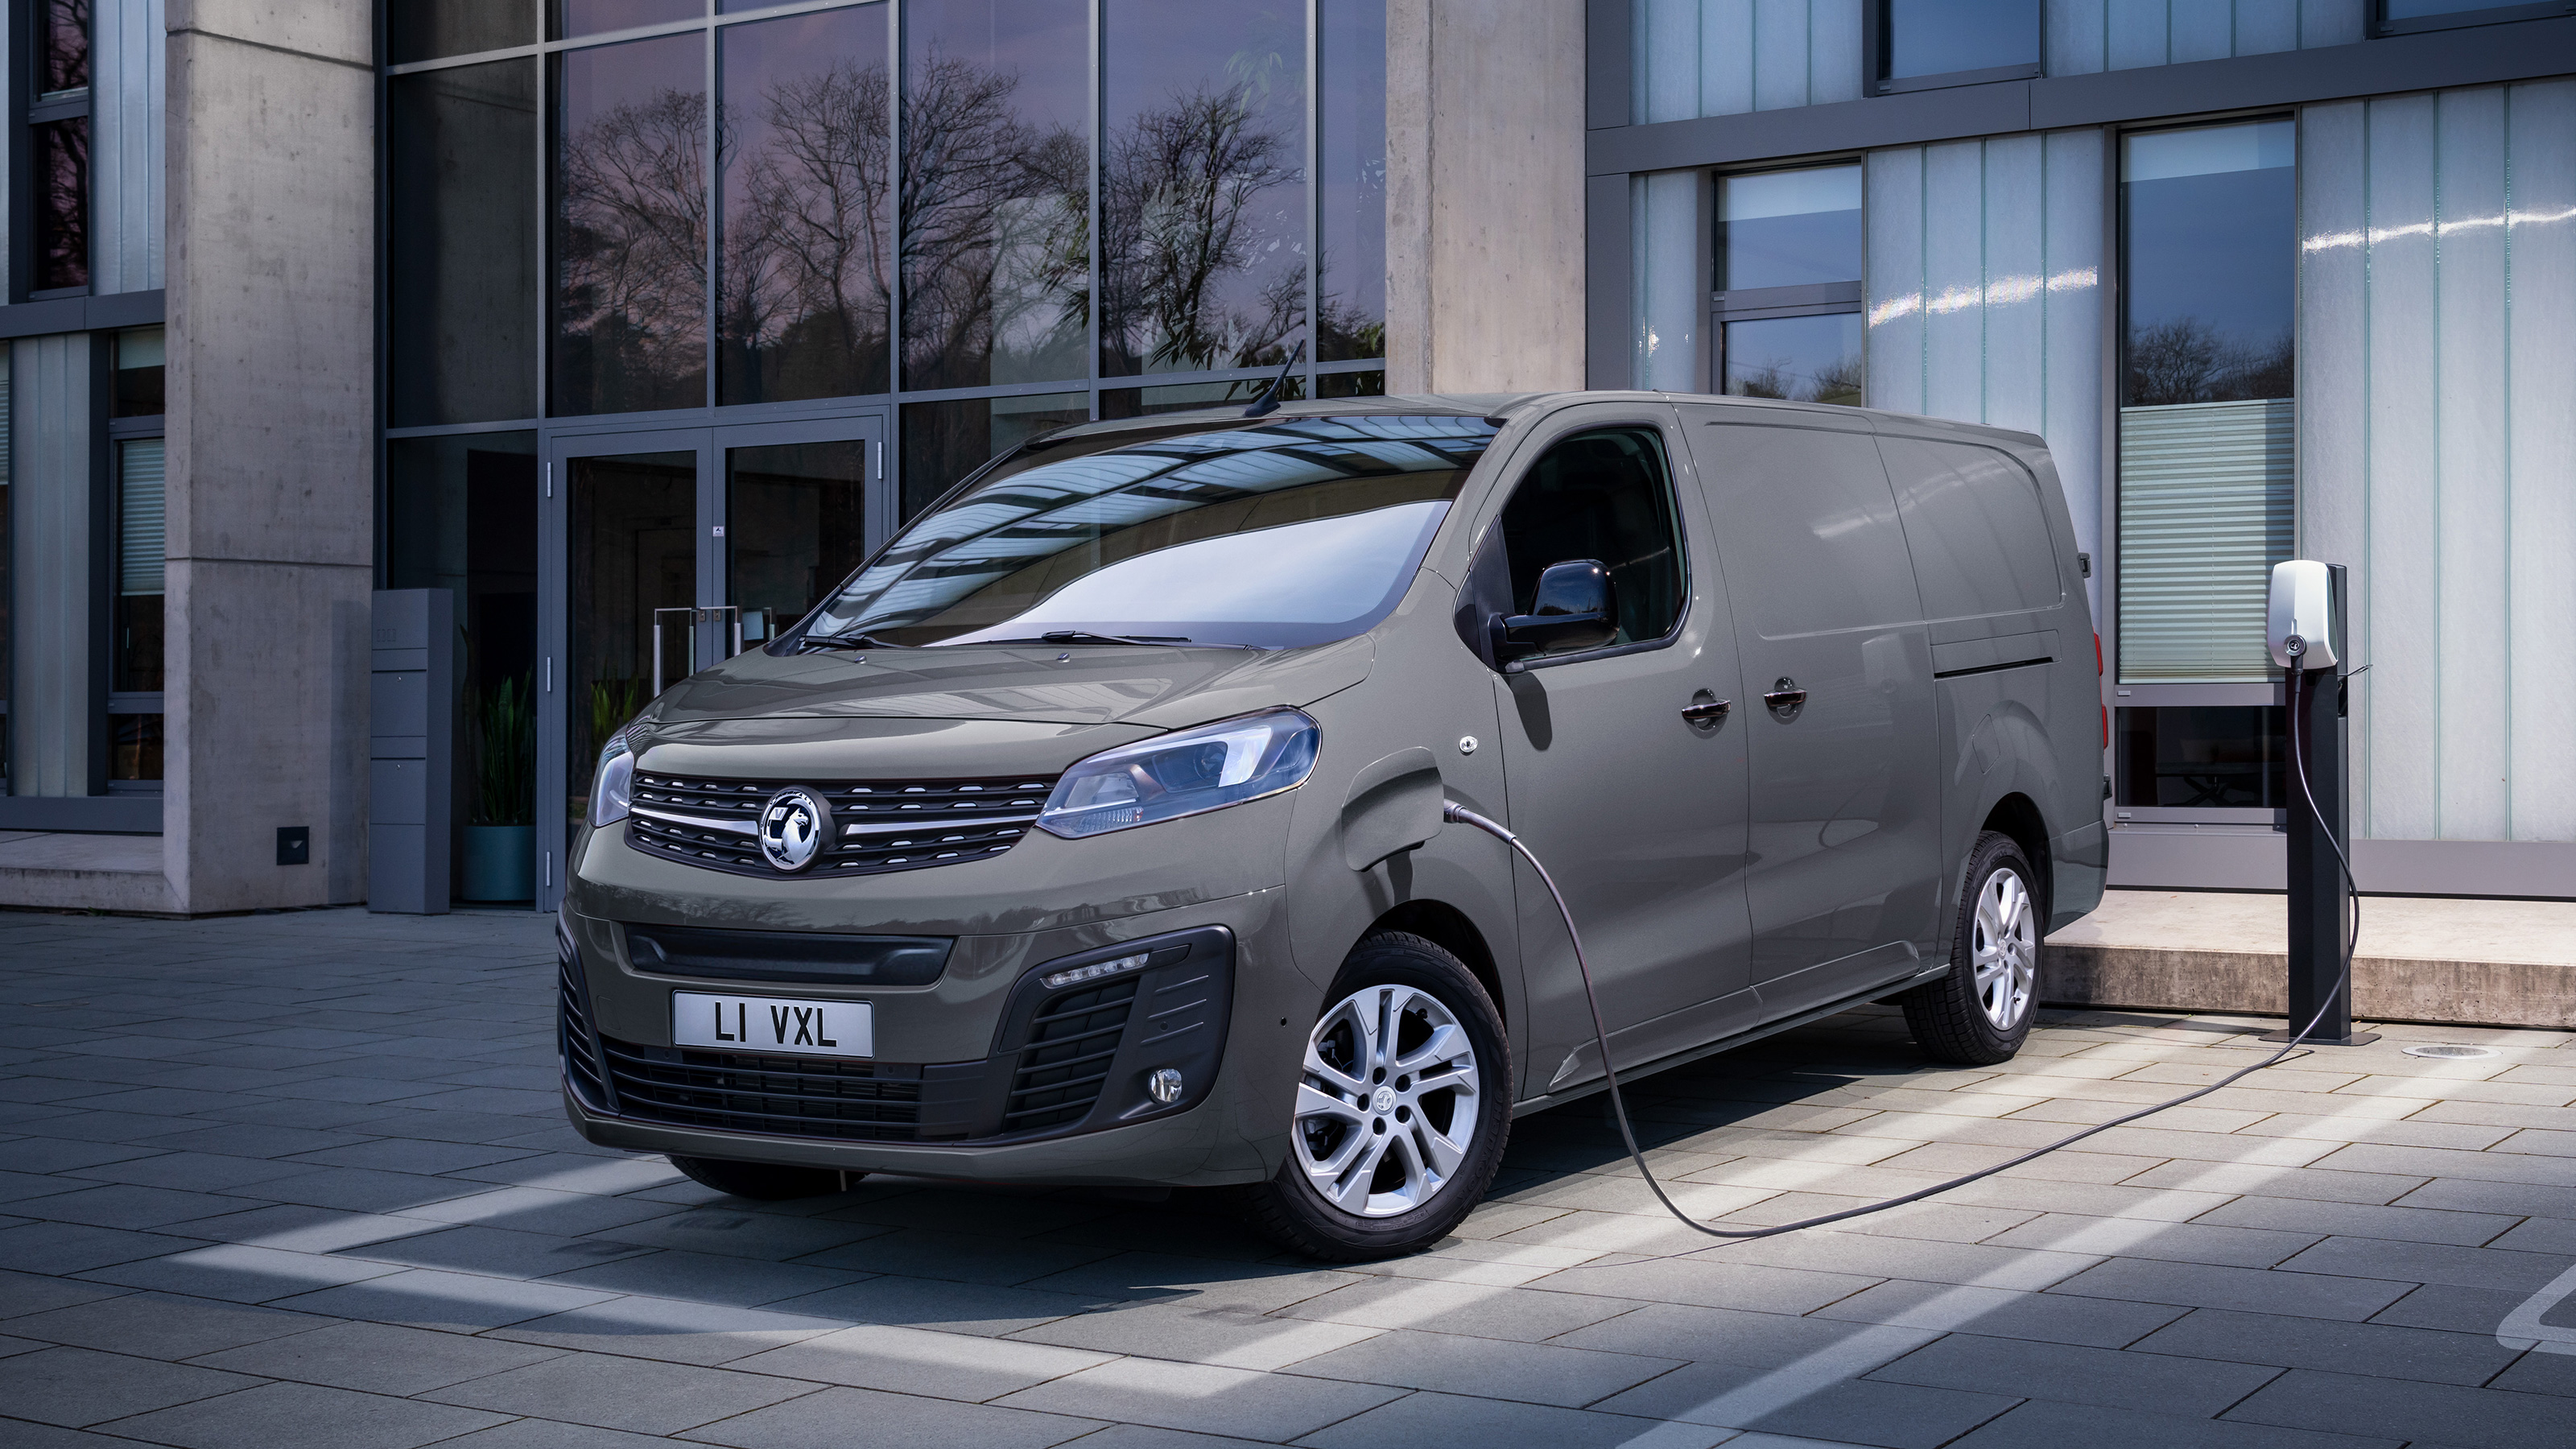 New Vauxhall Vivaro-e electric van: prices announced 